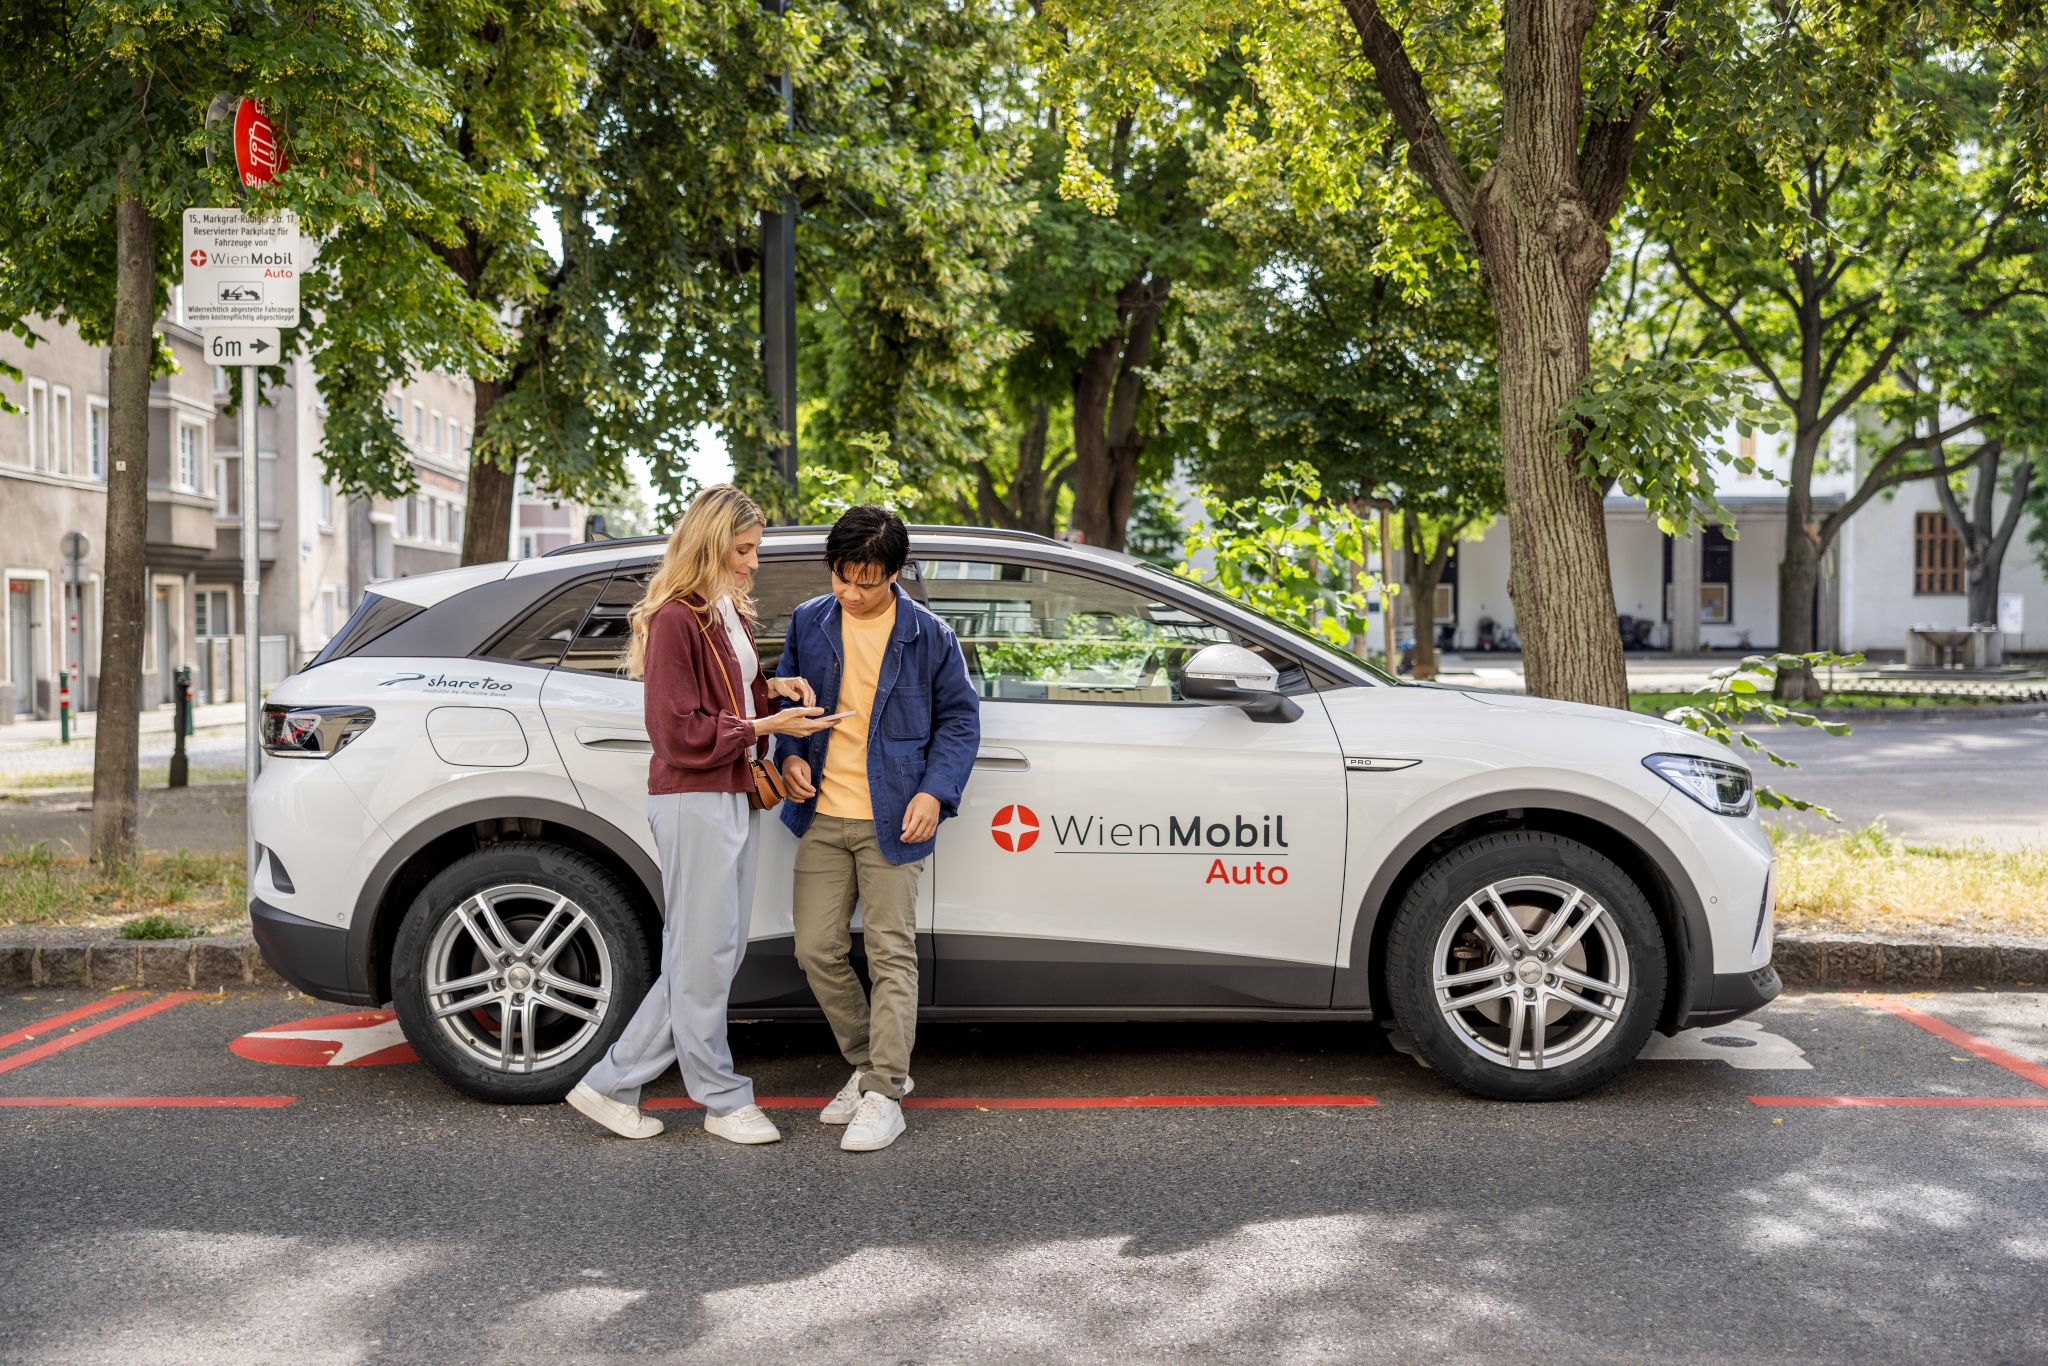 WienMobil verbindet das klassische Öffi-Angebot mit flexiblen Sharing- und in ganz Wien